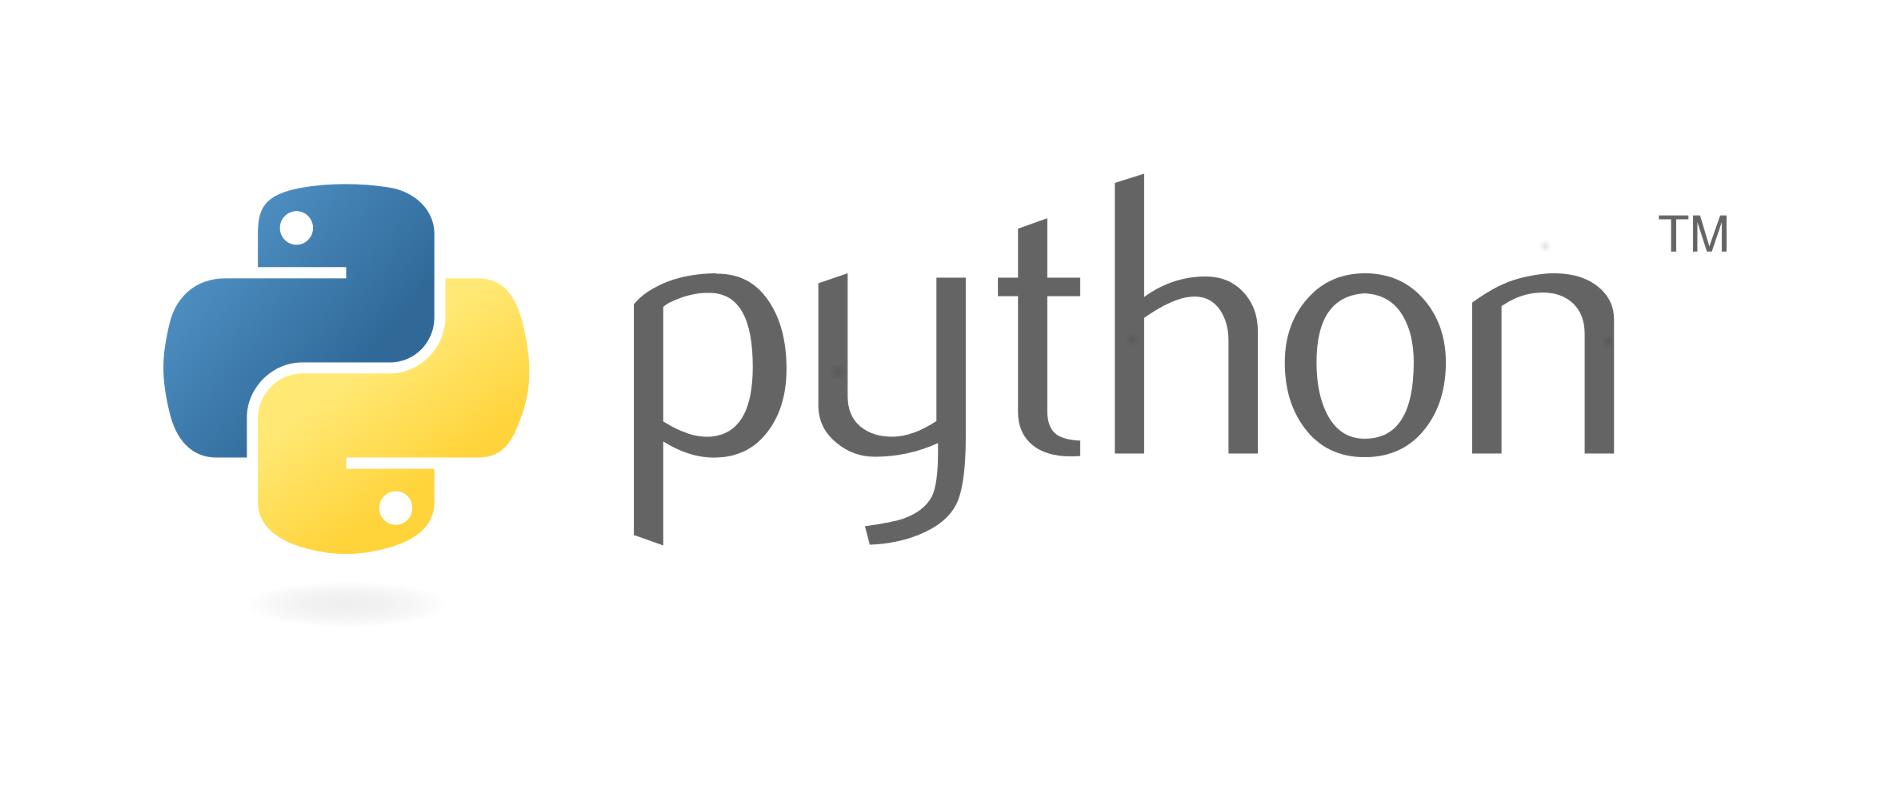 【python】requests-htmlを利用したwebスクレイピングのサンプルプログラム